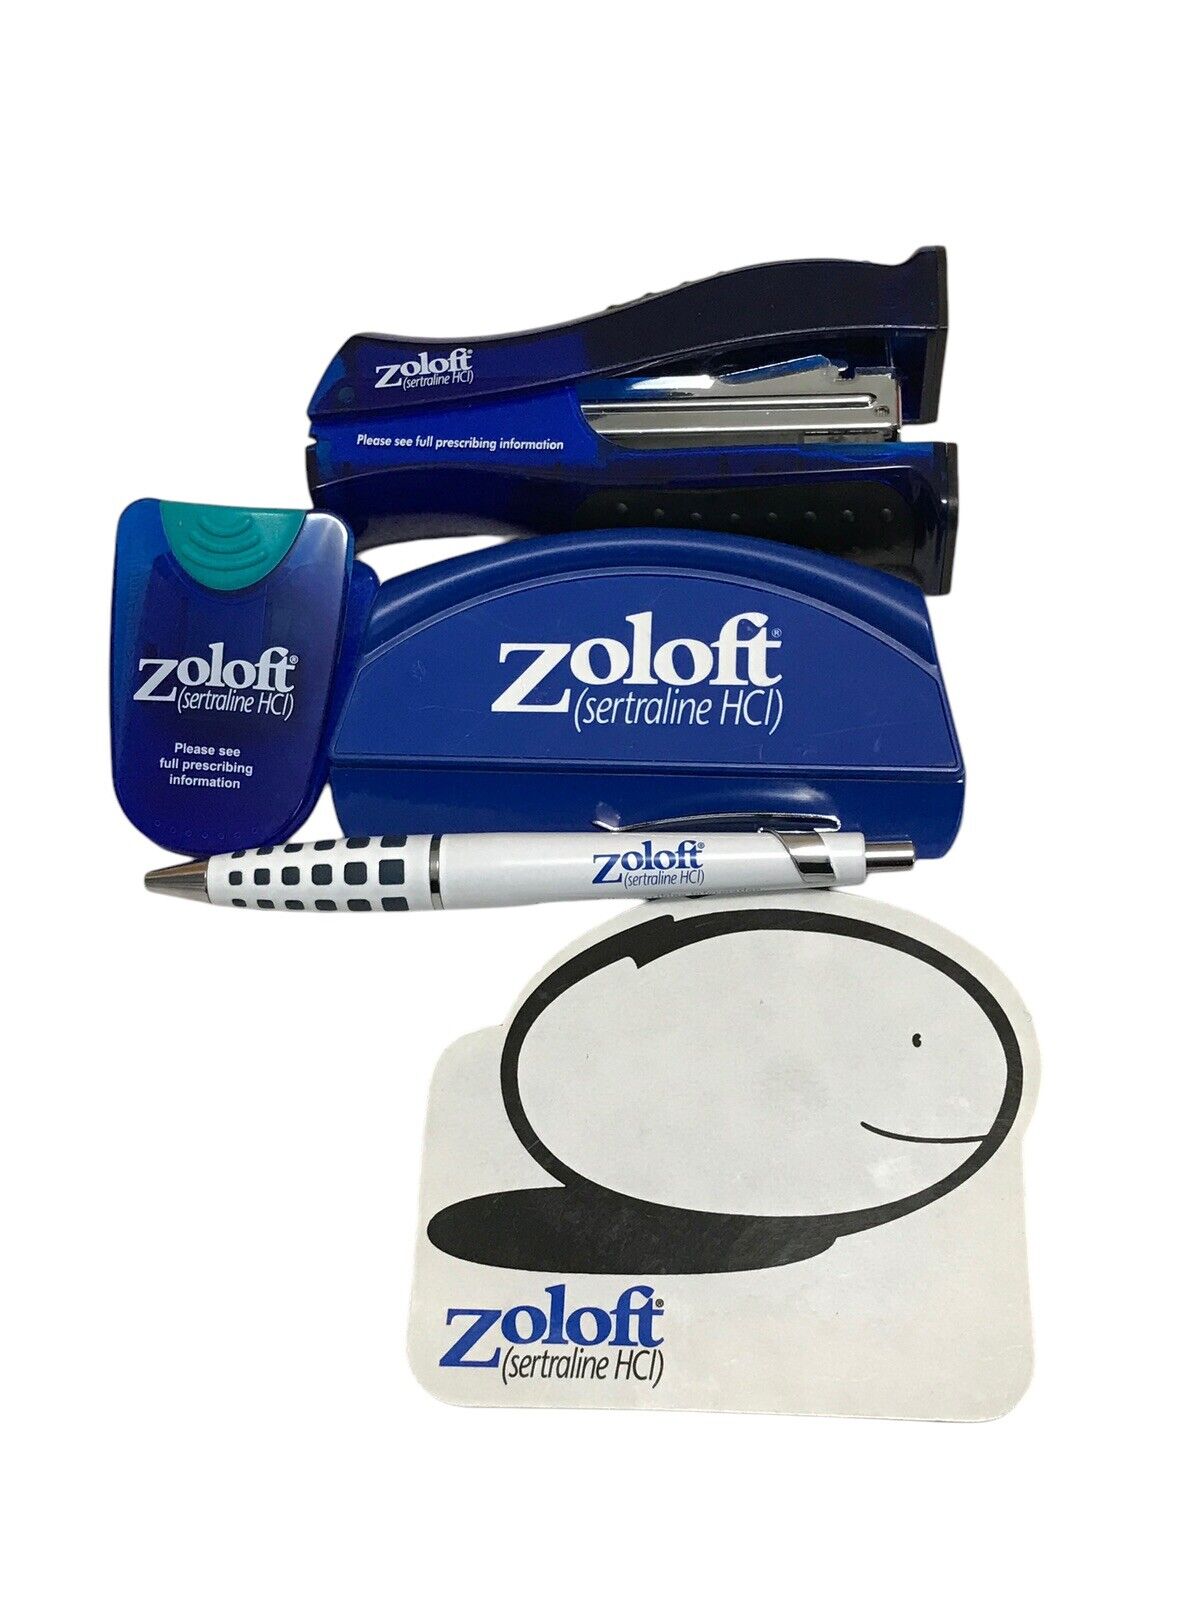 Drug Rep Pharmaceutical Lot Zoloft RARE Magnetic Clip Cobalt Blue Stapler Magnet